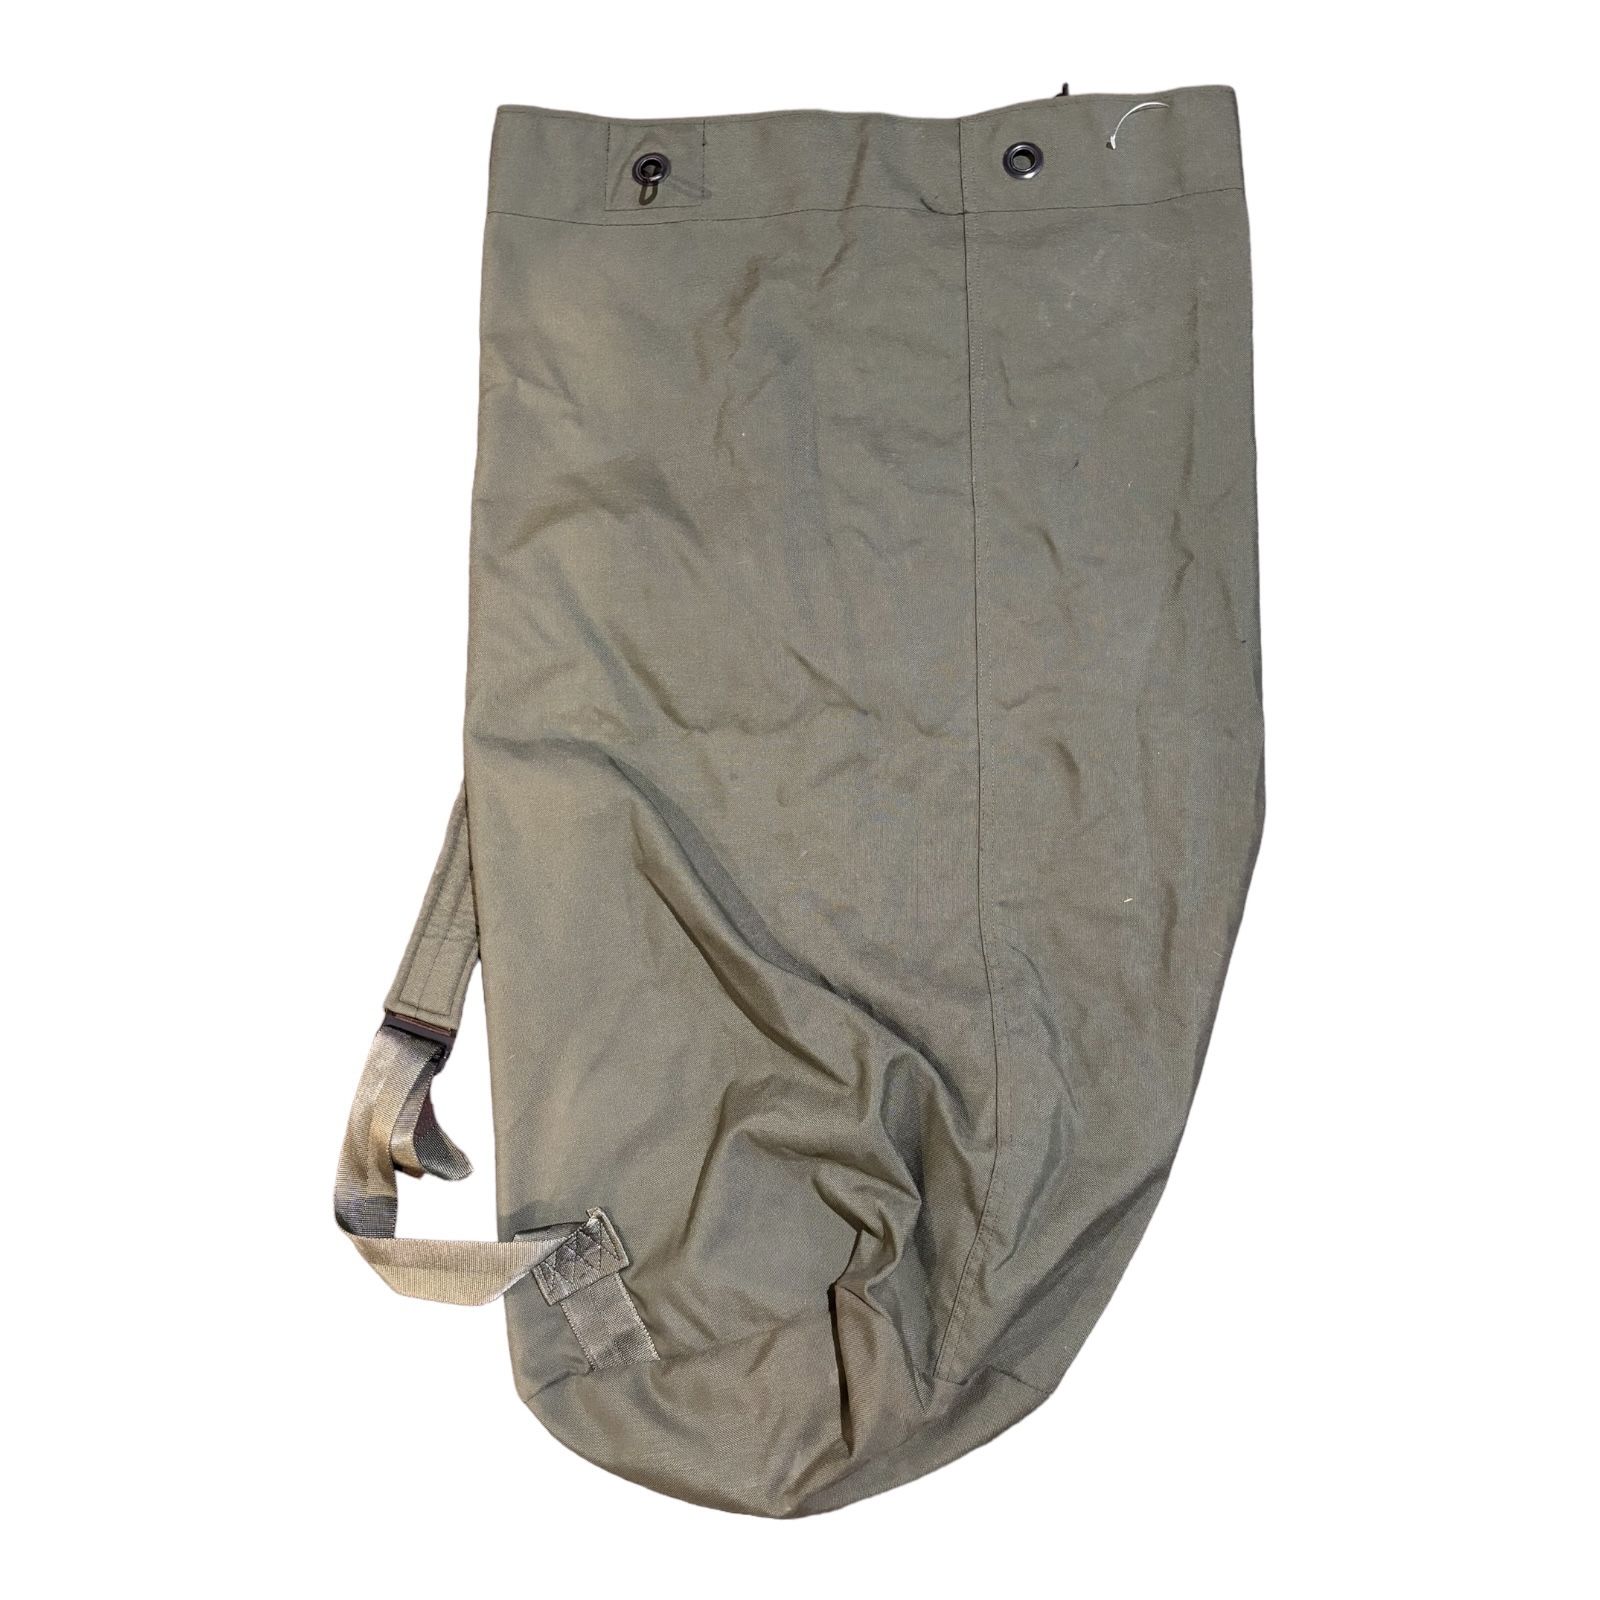 Military Duffel Bag Backpack Rucksack Olive Green 36" X 24” Top Load